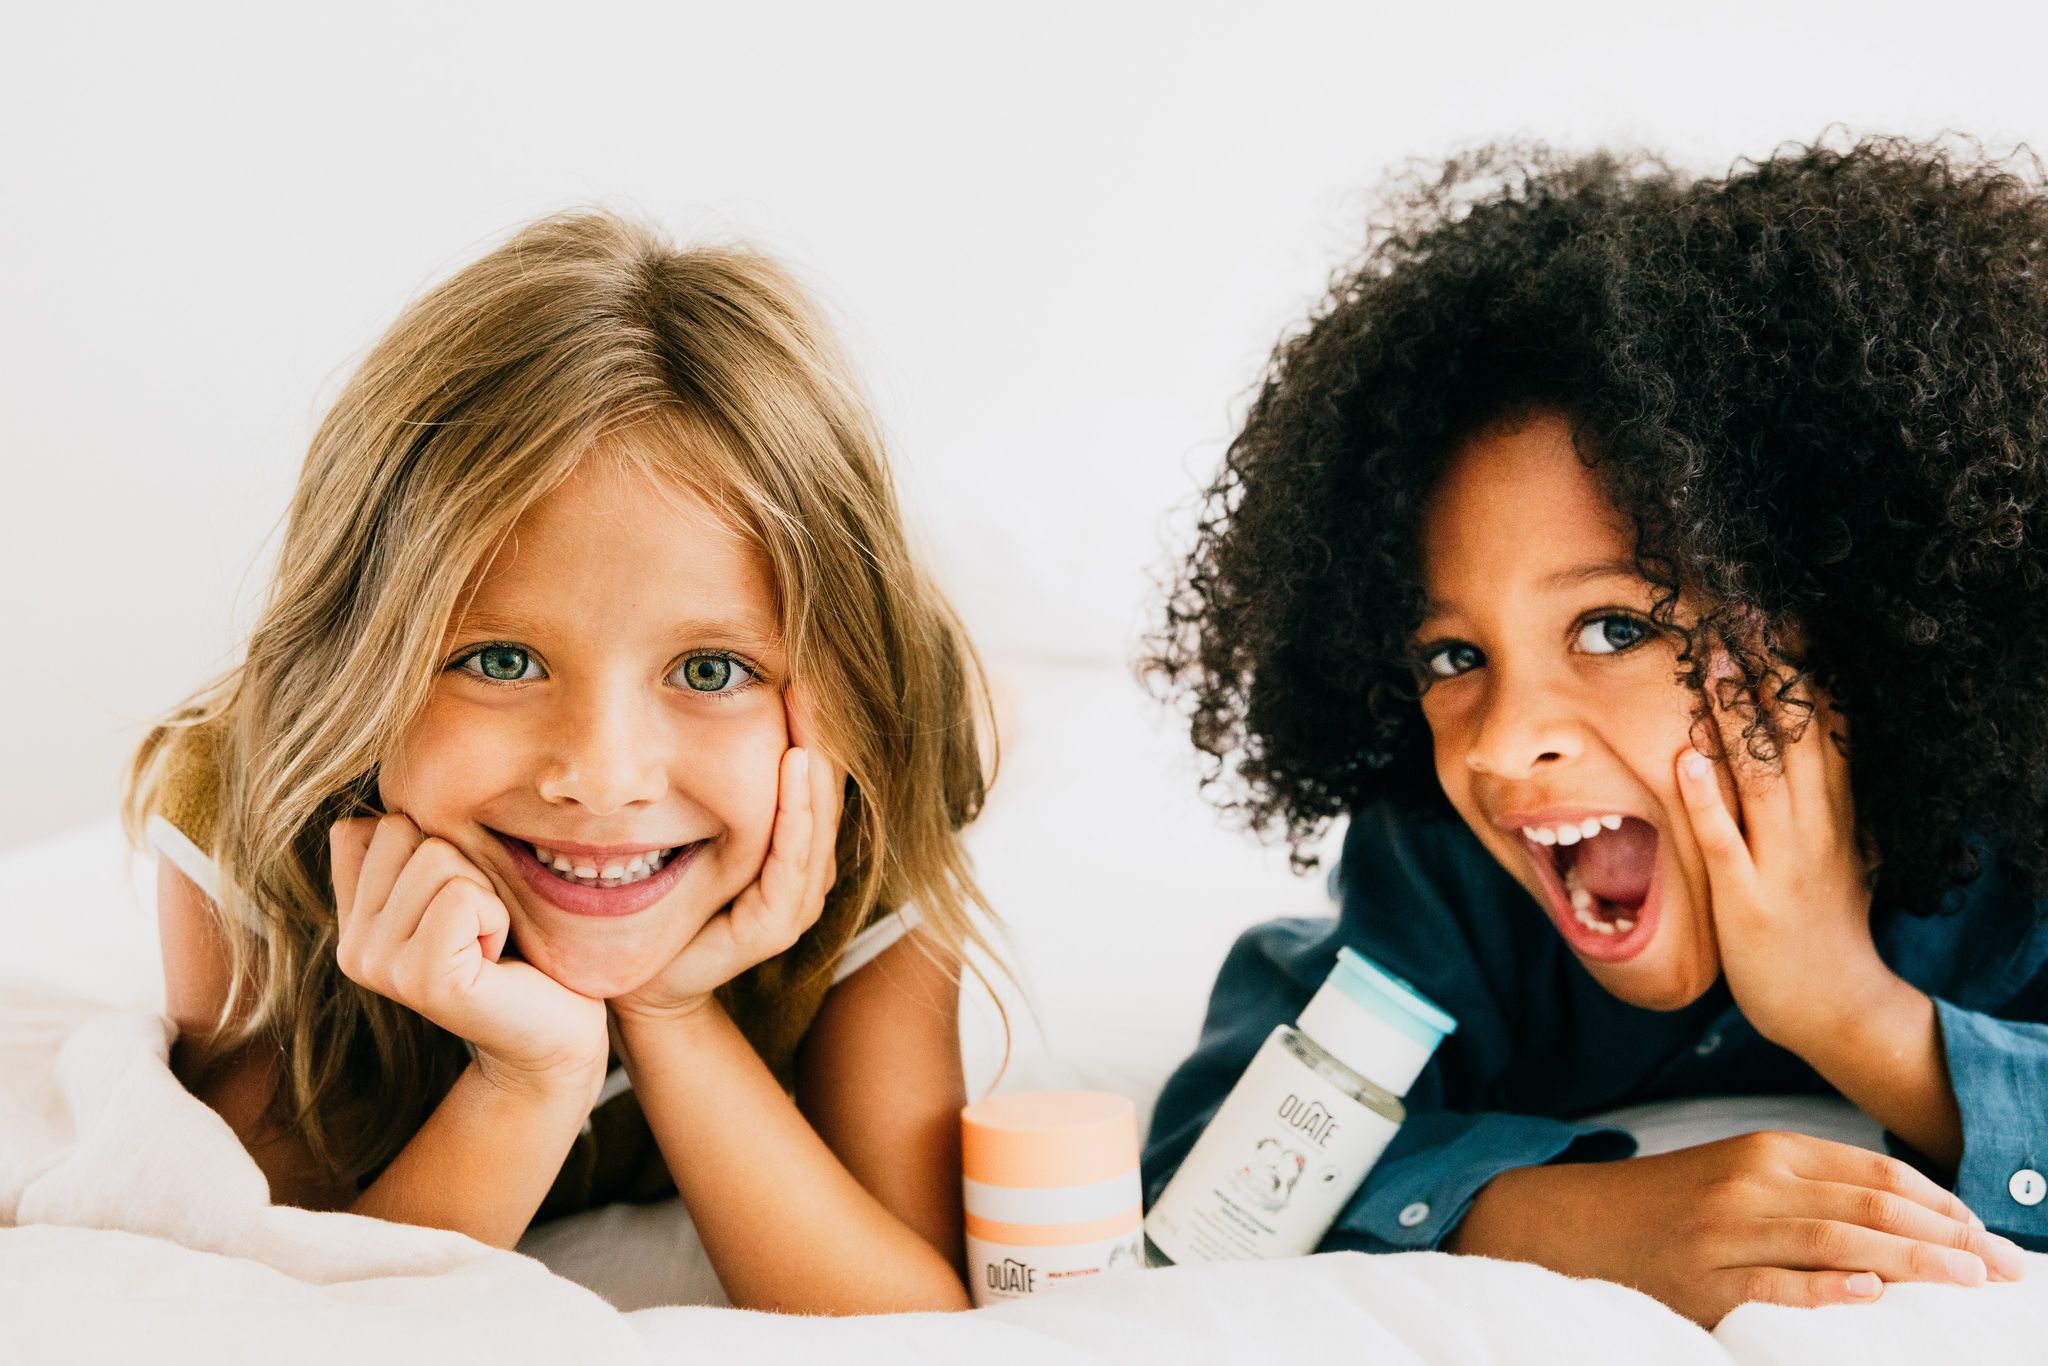 Les filles sourient à l'appareil photo, le concept de peau saine pour les enfants